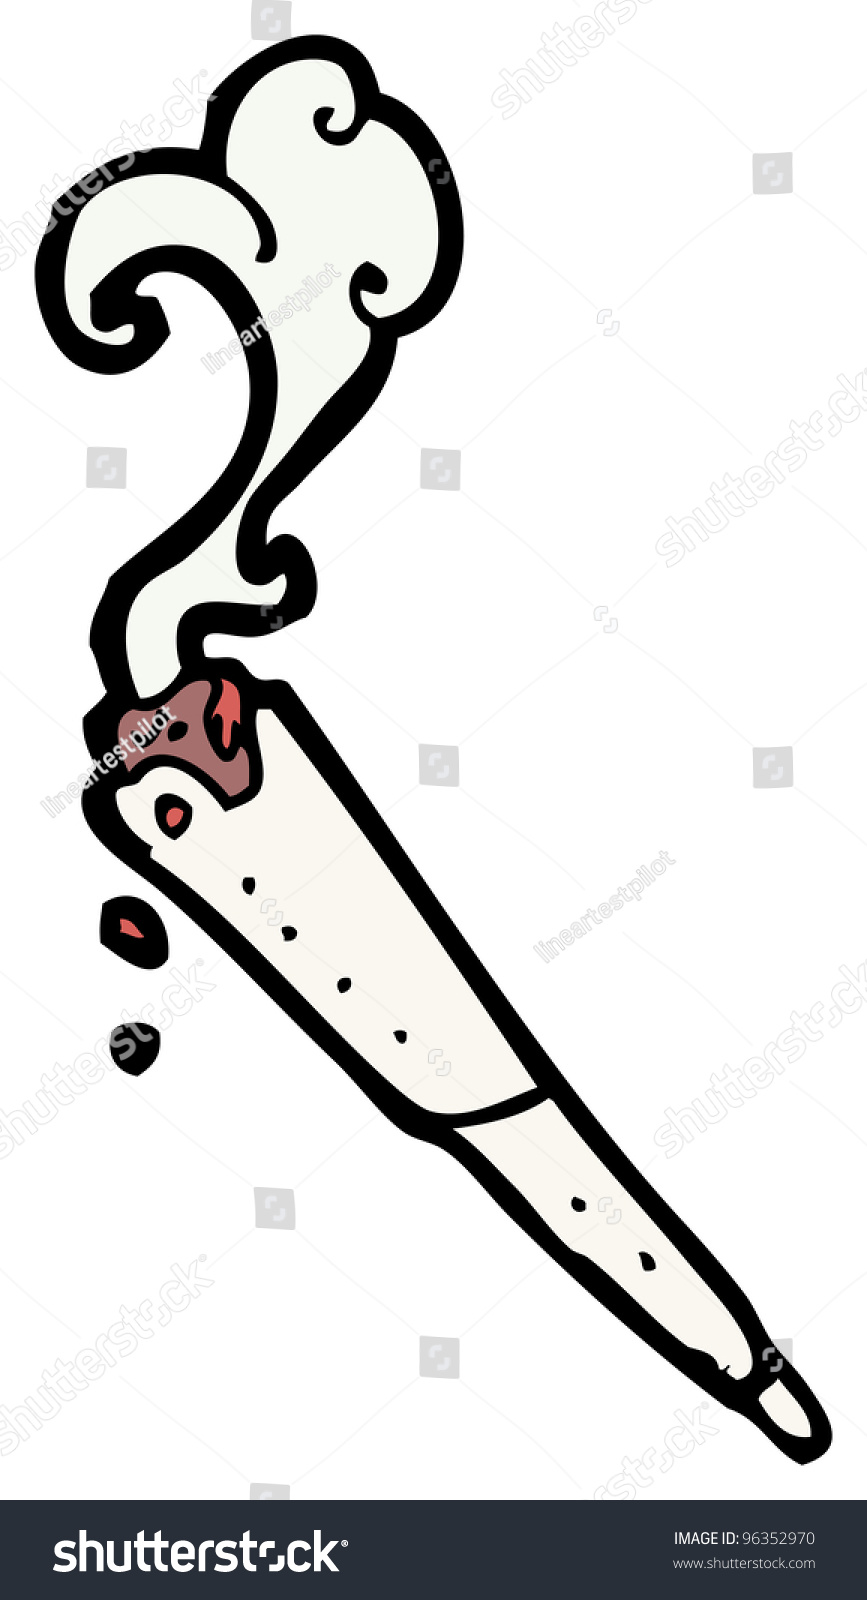 Marijuana Joint Cartoon Stock Illustration 96352970 - Shutterstock